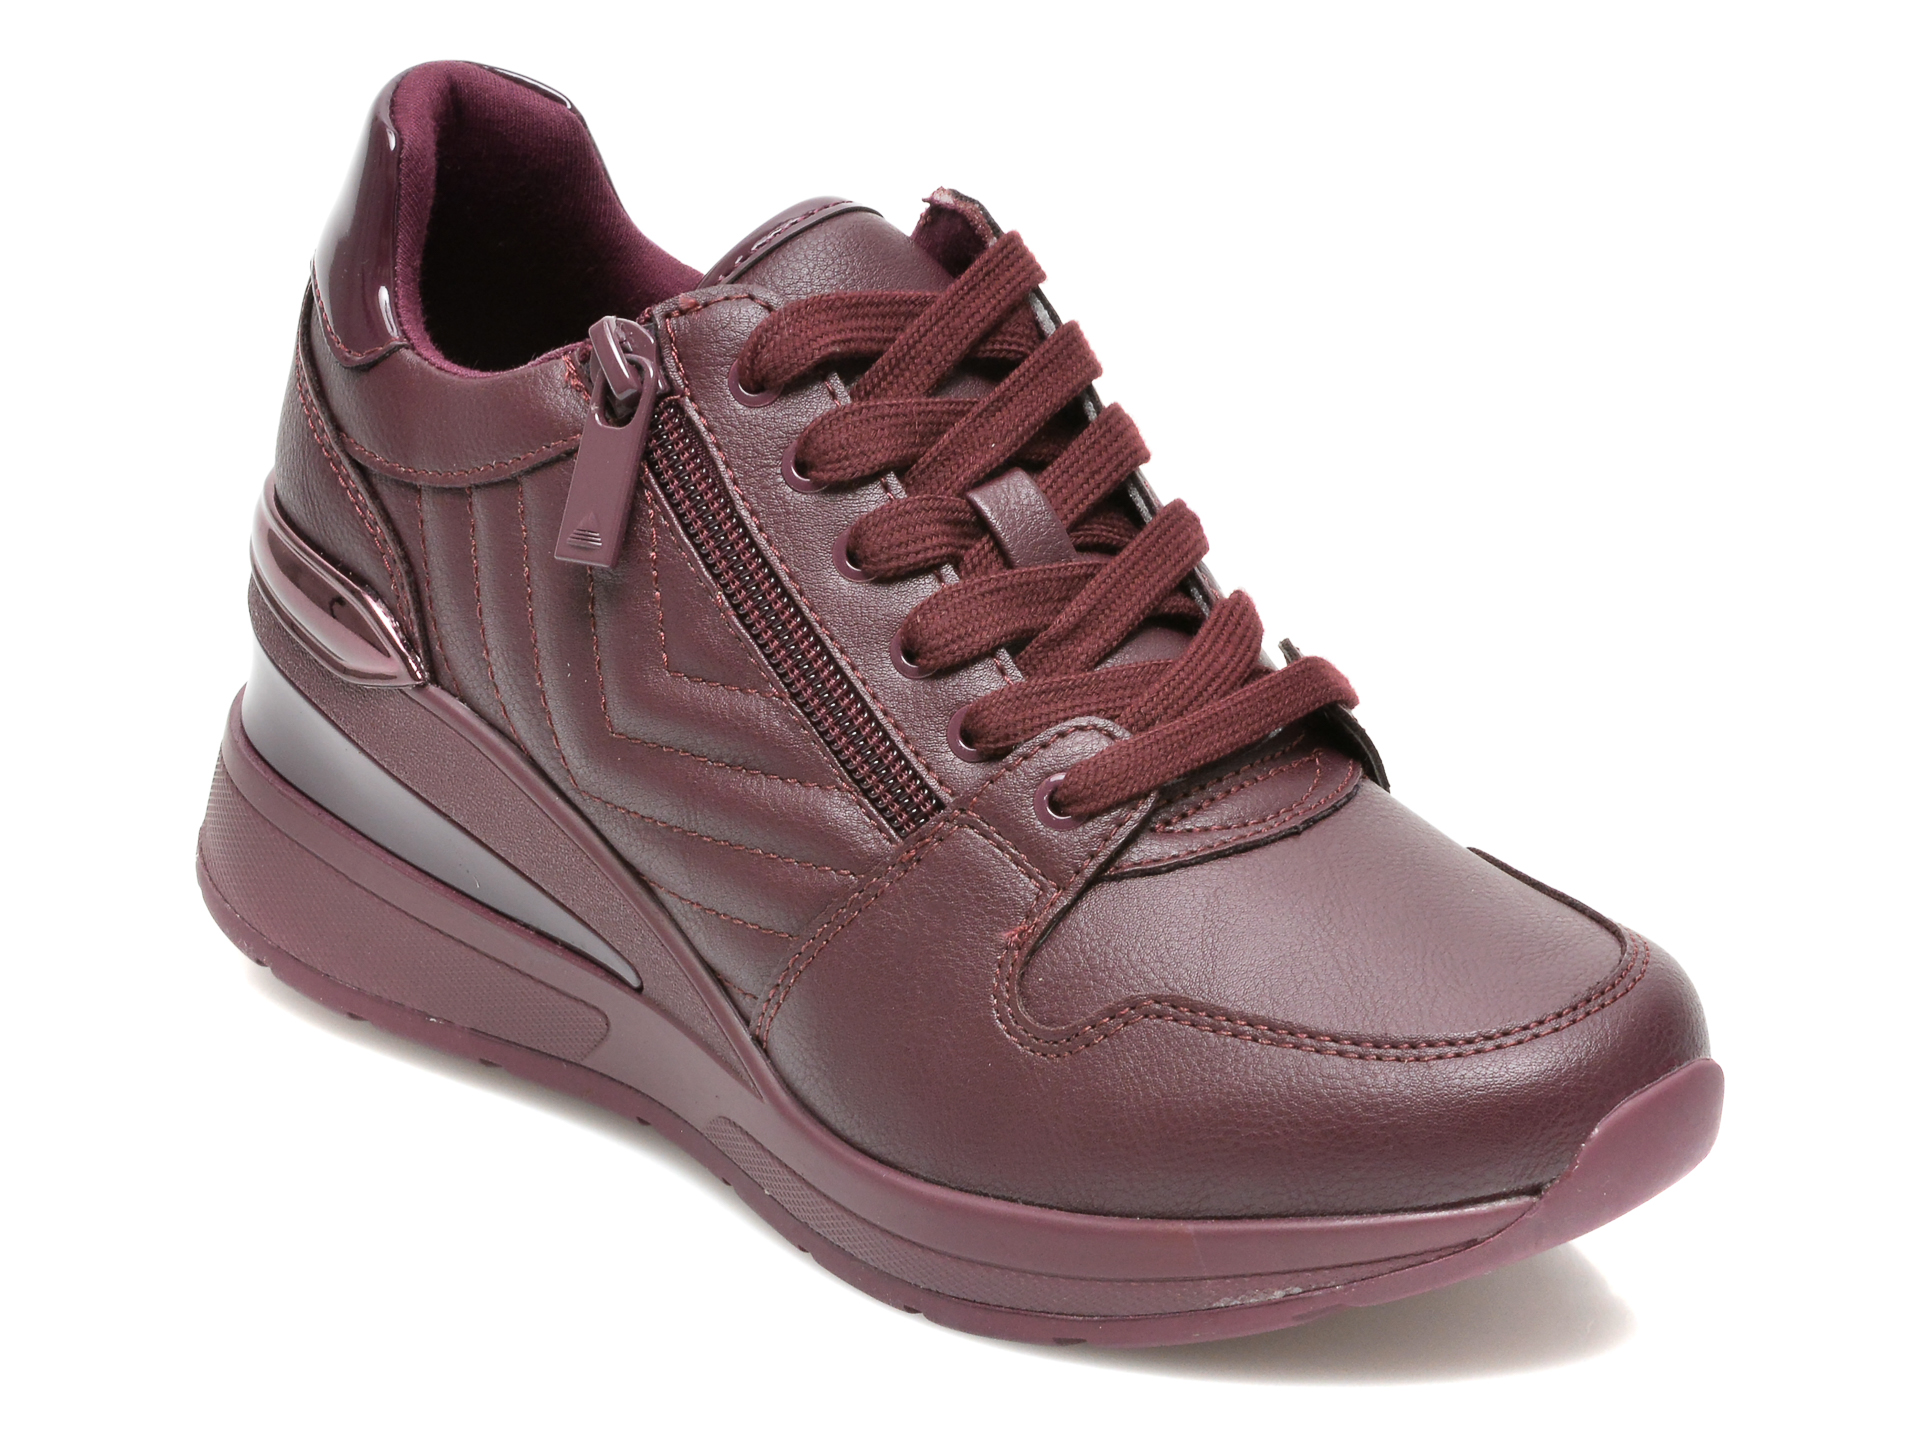 Pantofi sport ALDO visinii, ADWIWIA601, din piele ecologica Aldo